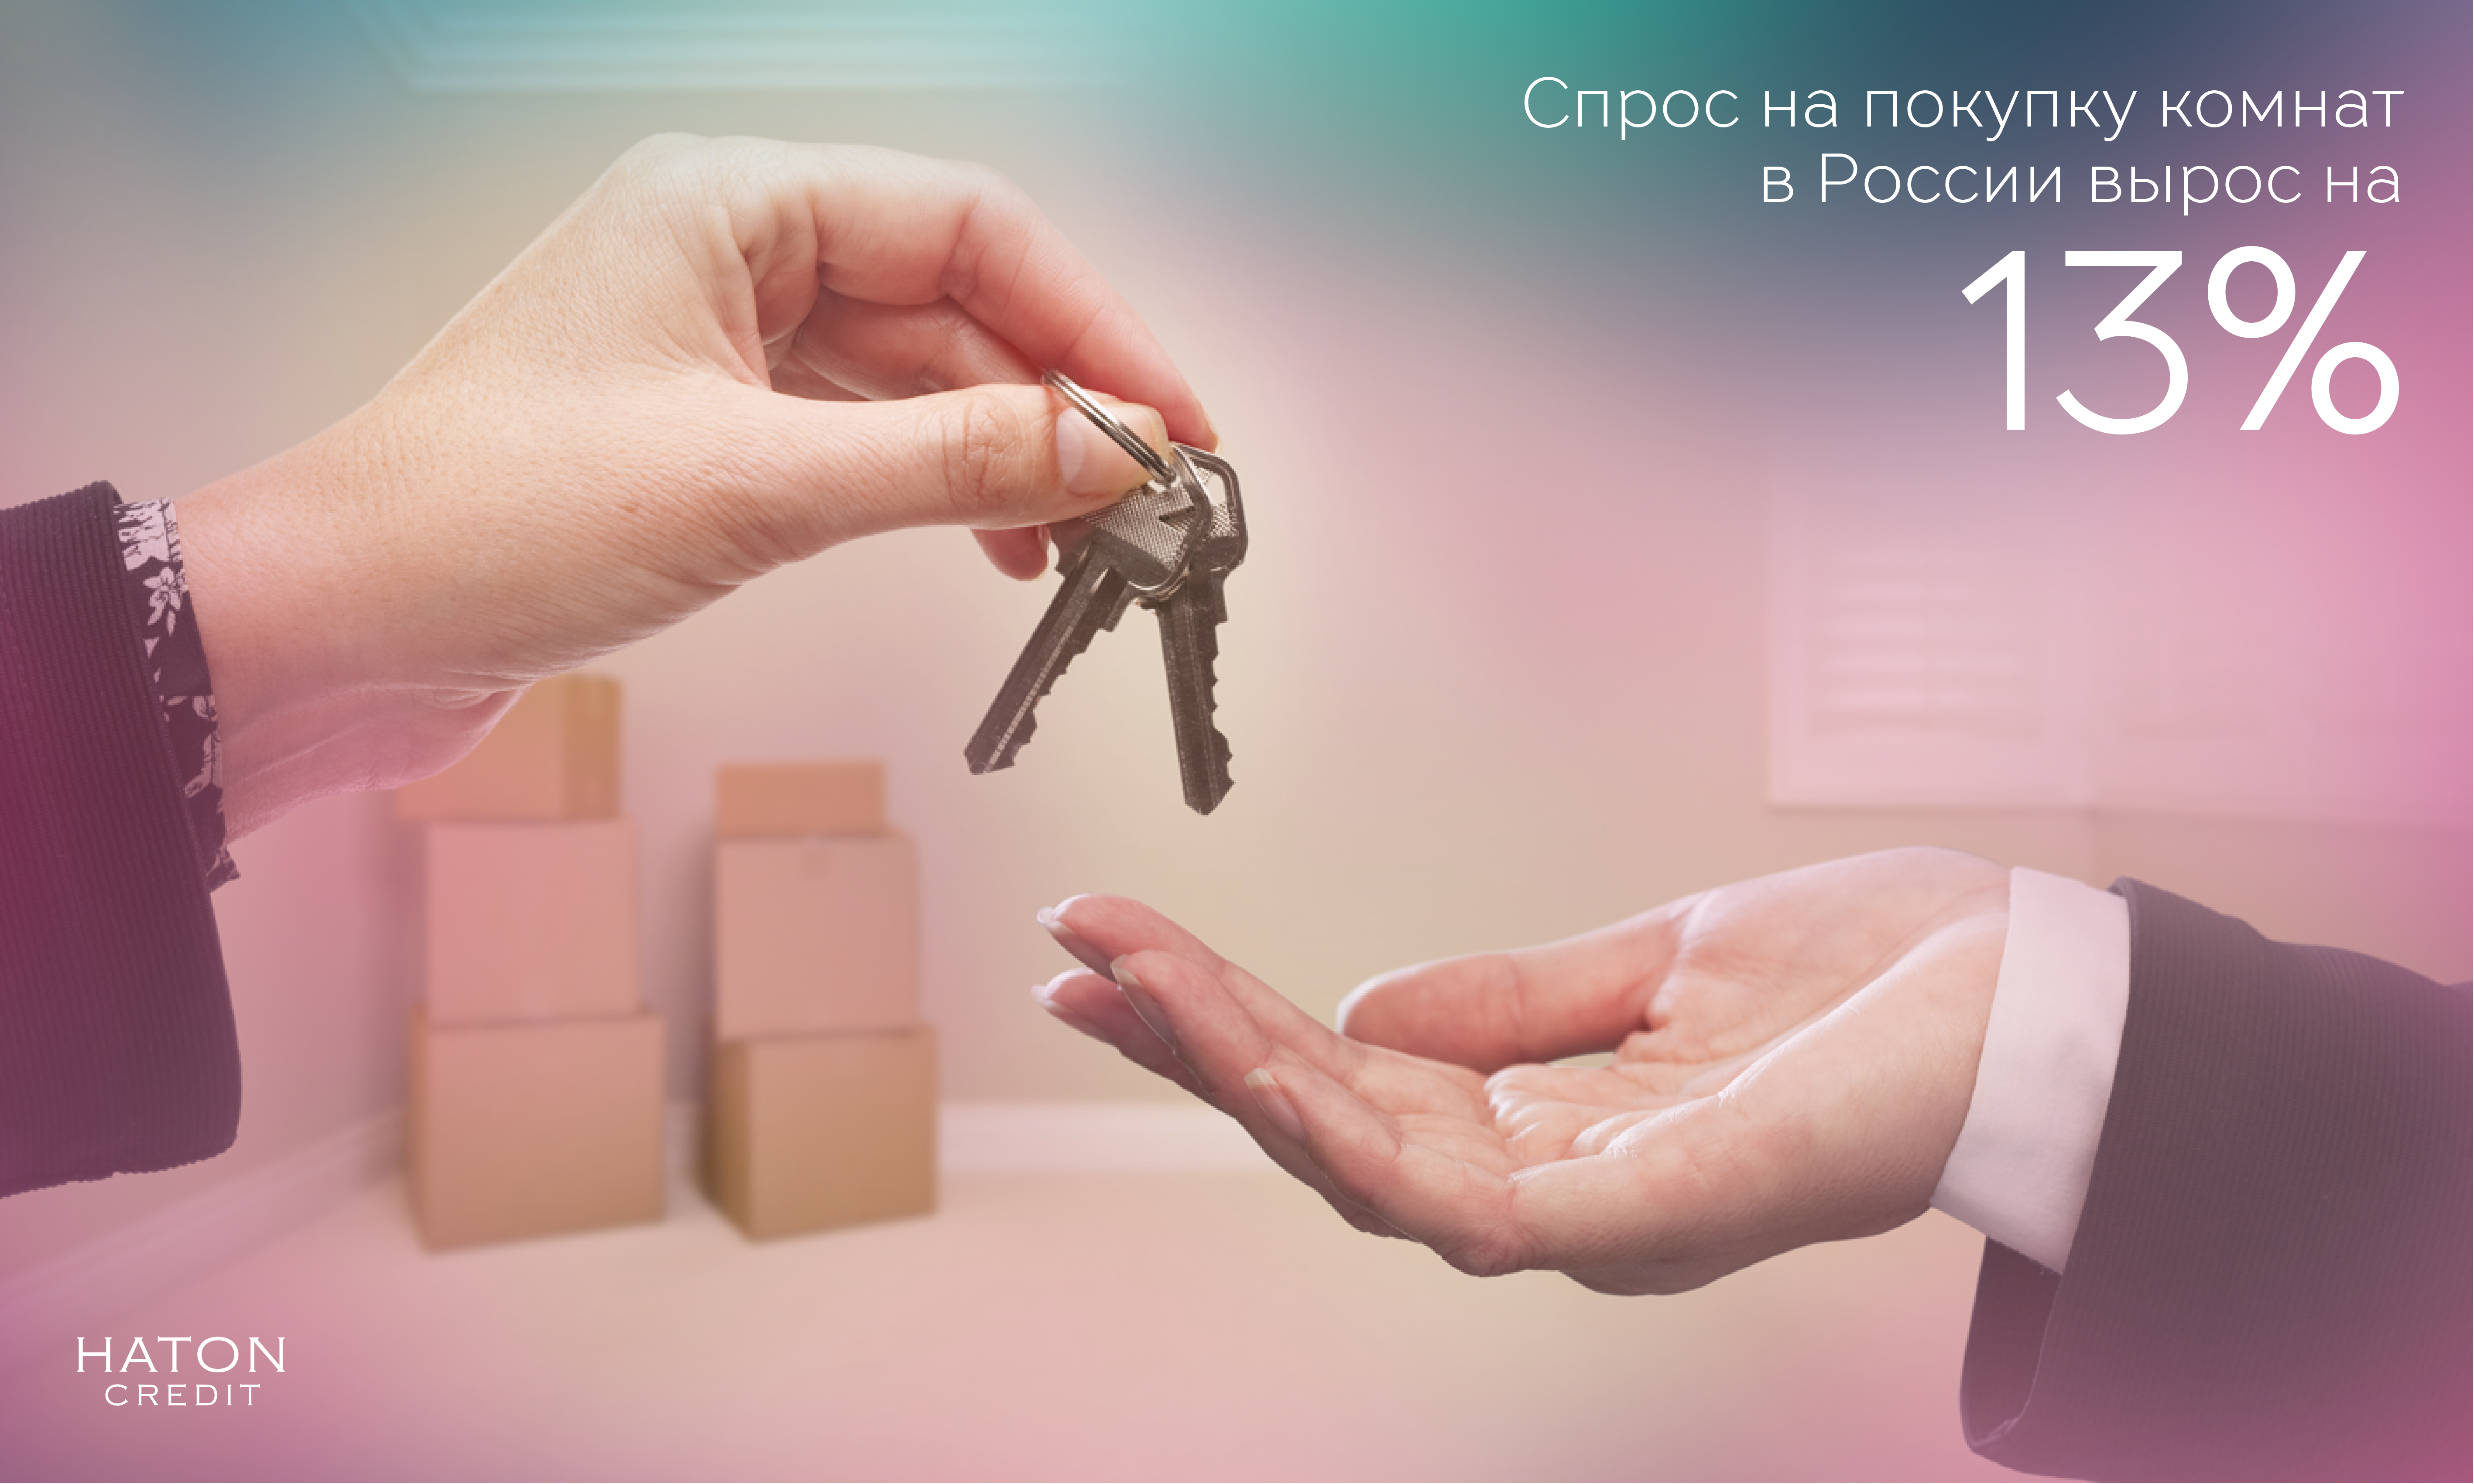 Спрос на покупку комнат в России вырос на 13%.